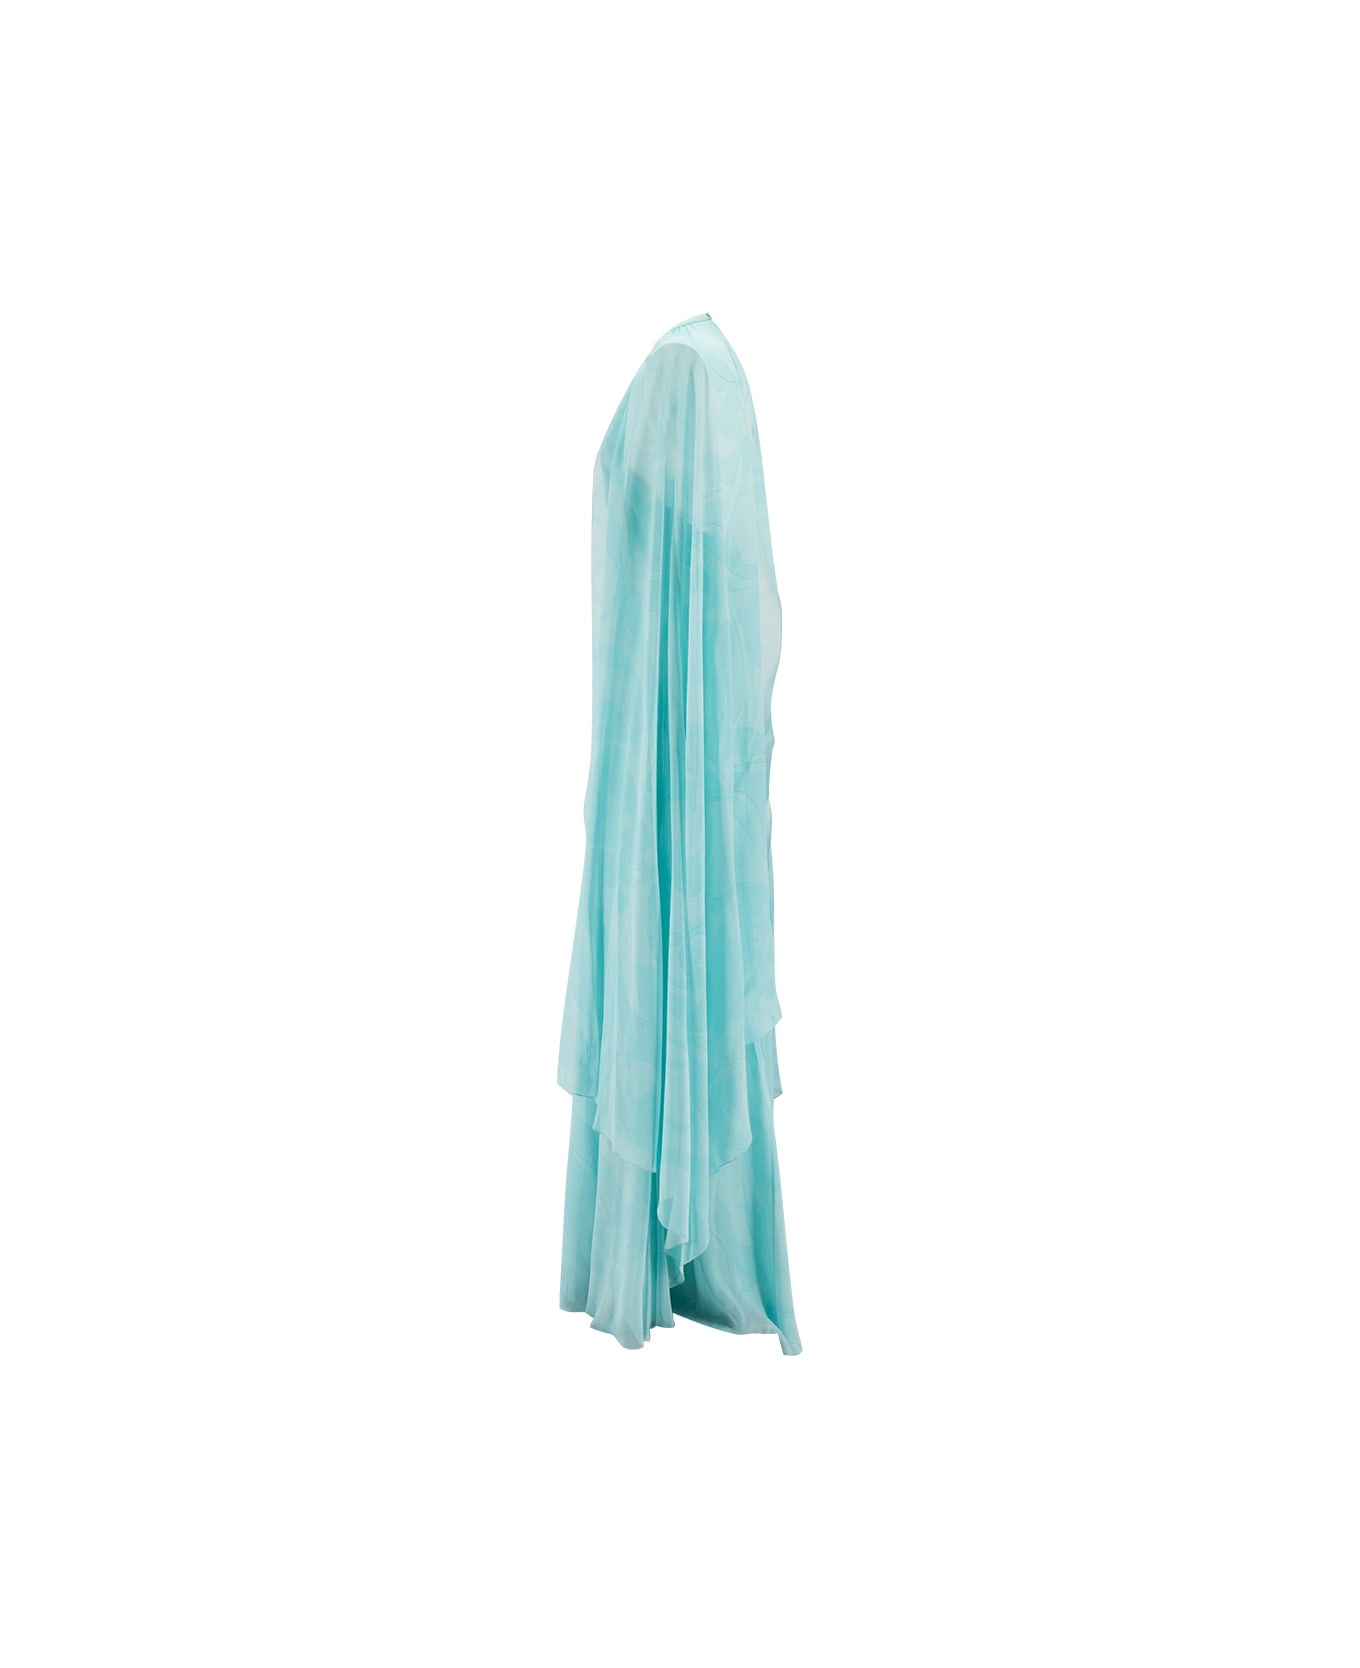 Etro Floral Wave Long Dress - LIGHT BLUE